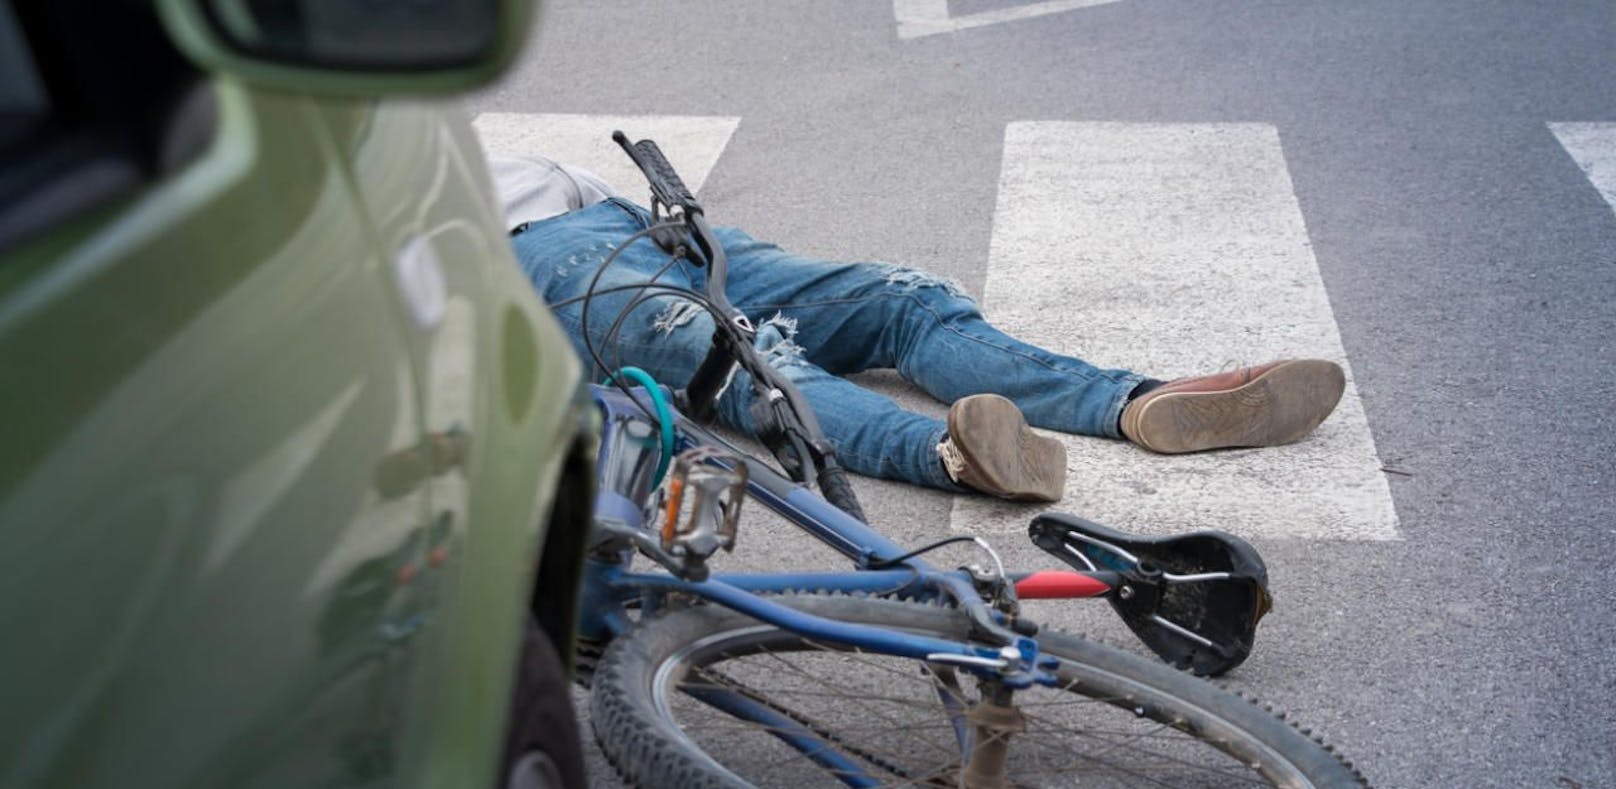 Die 45-jährige Radlenkerin wurde von einem Auto angefahren